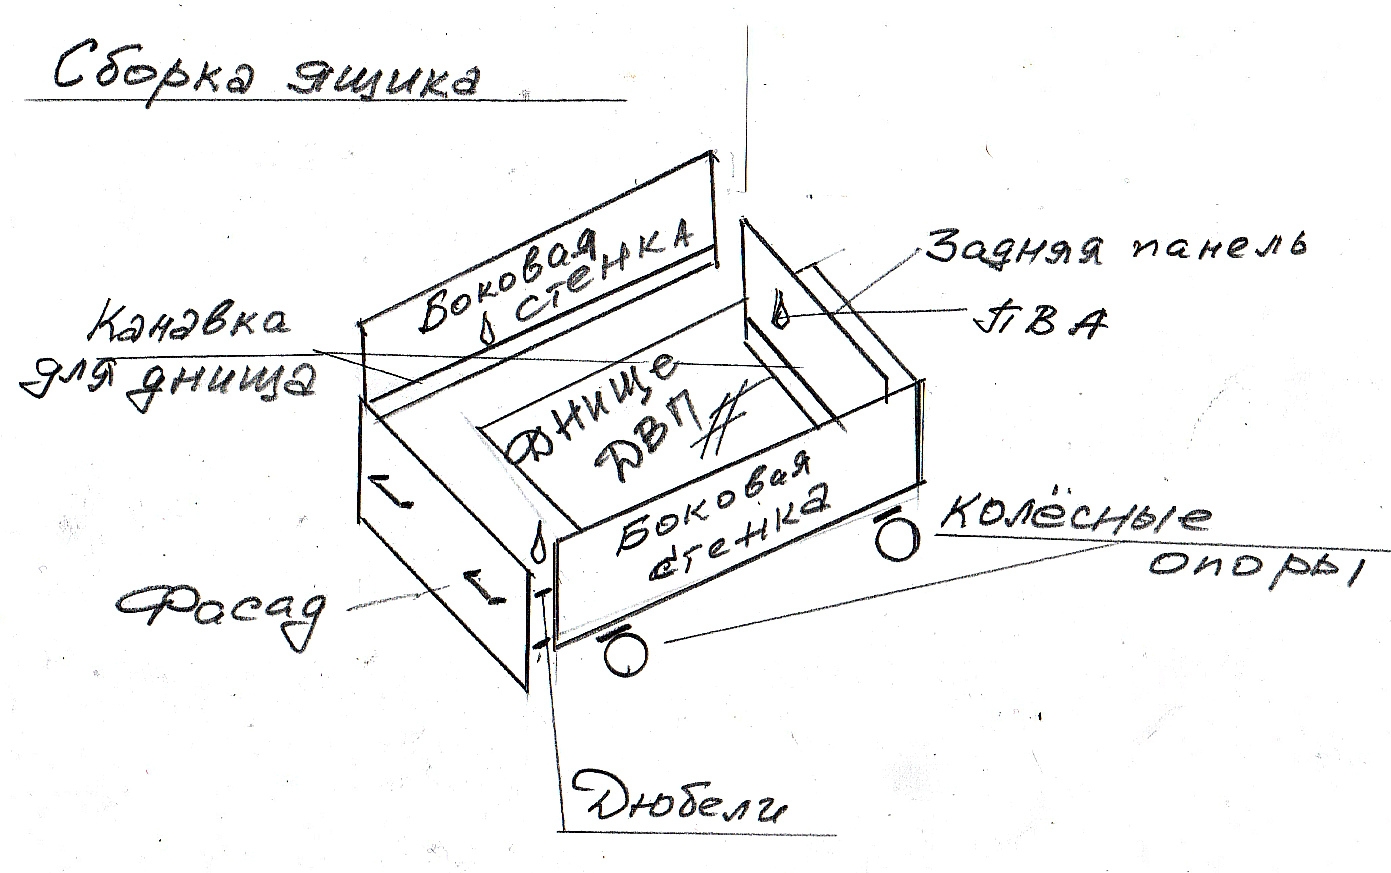 Схема сборки тумбы с выдвижными ящиками